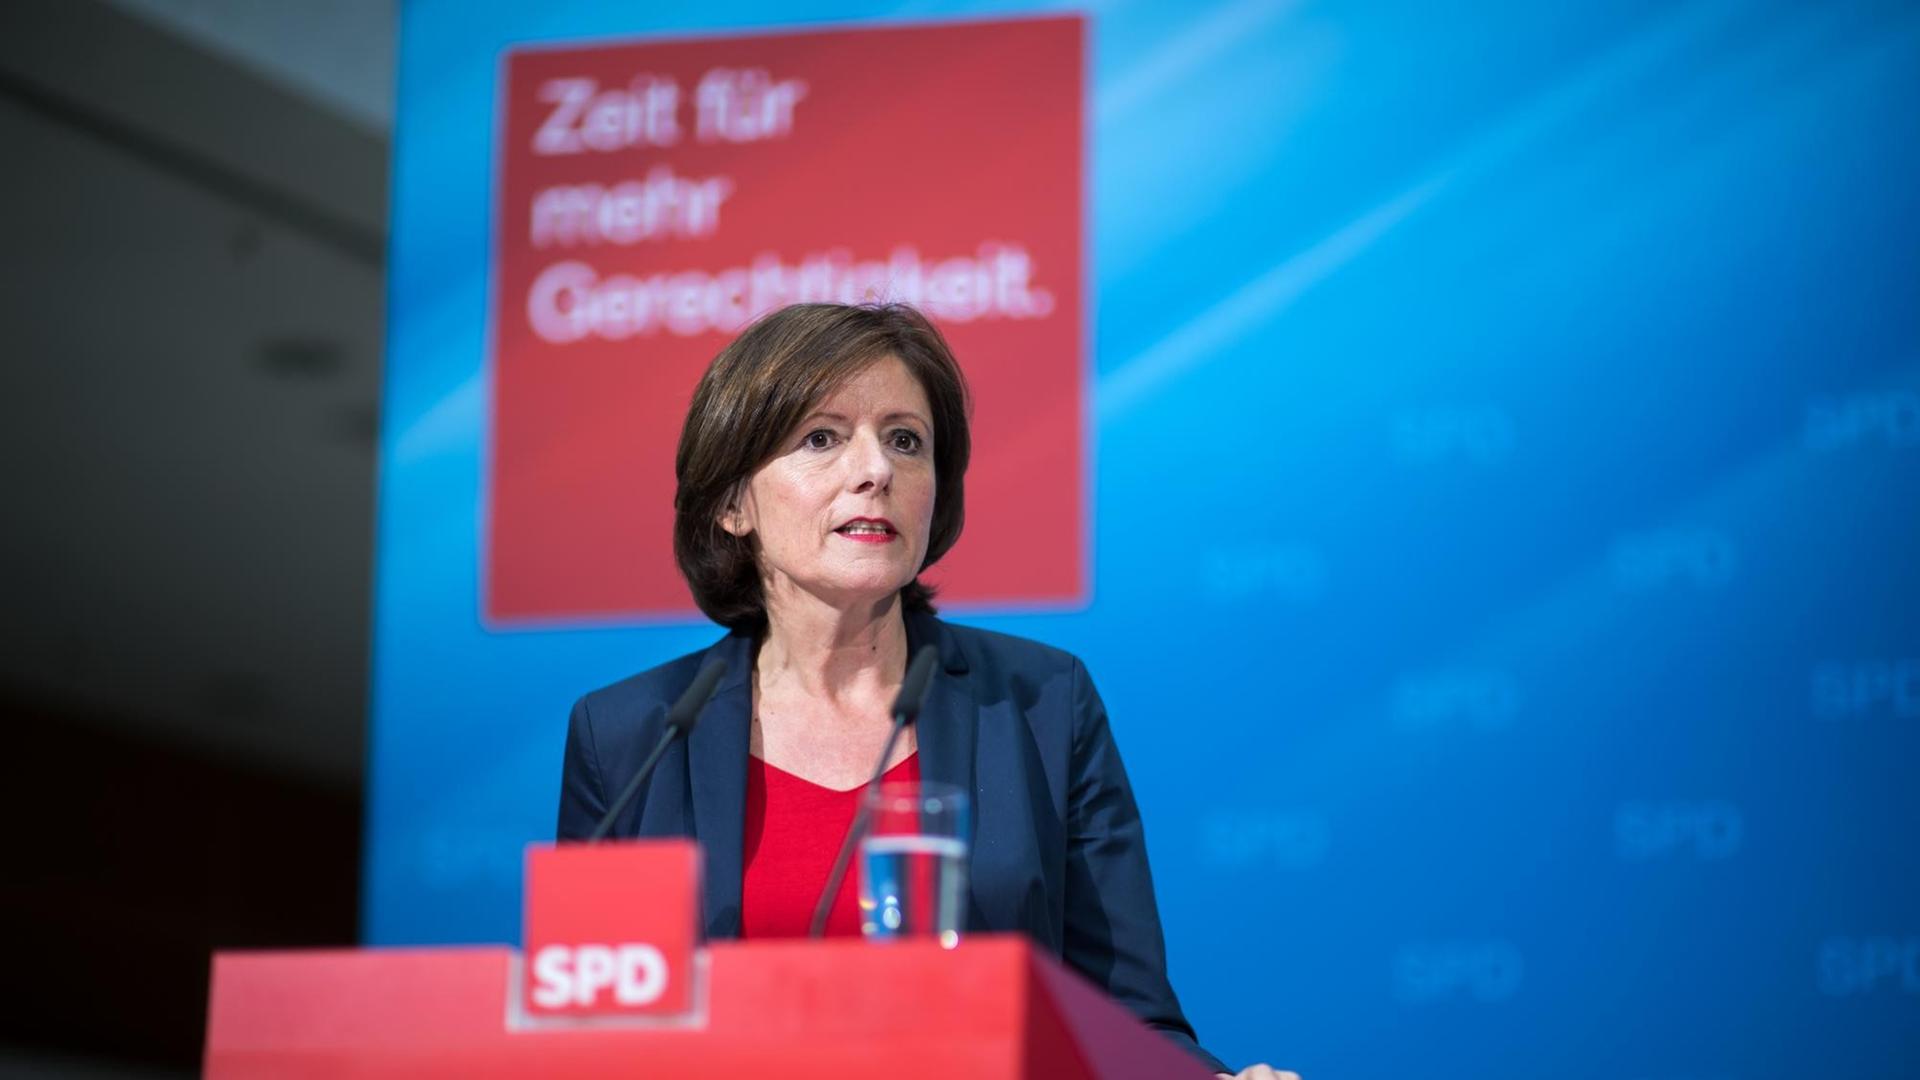 Malu Dreyer (SPD), Ministerpräsidentin von Rheinland-Pfalz, äußert sich am 03.07.2017 bei einer Pressekonferenz in Berlin zum Wahlprogramm der Unionsparteien.